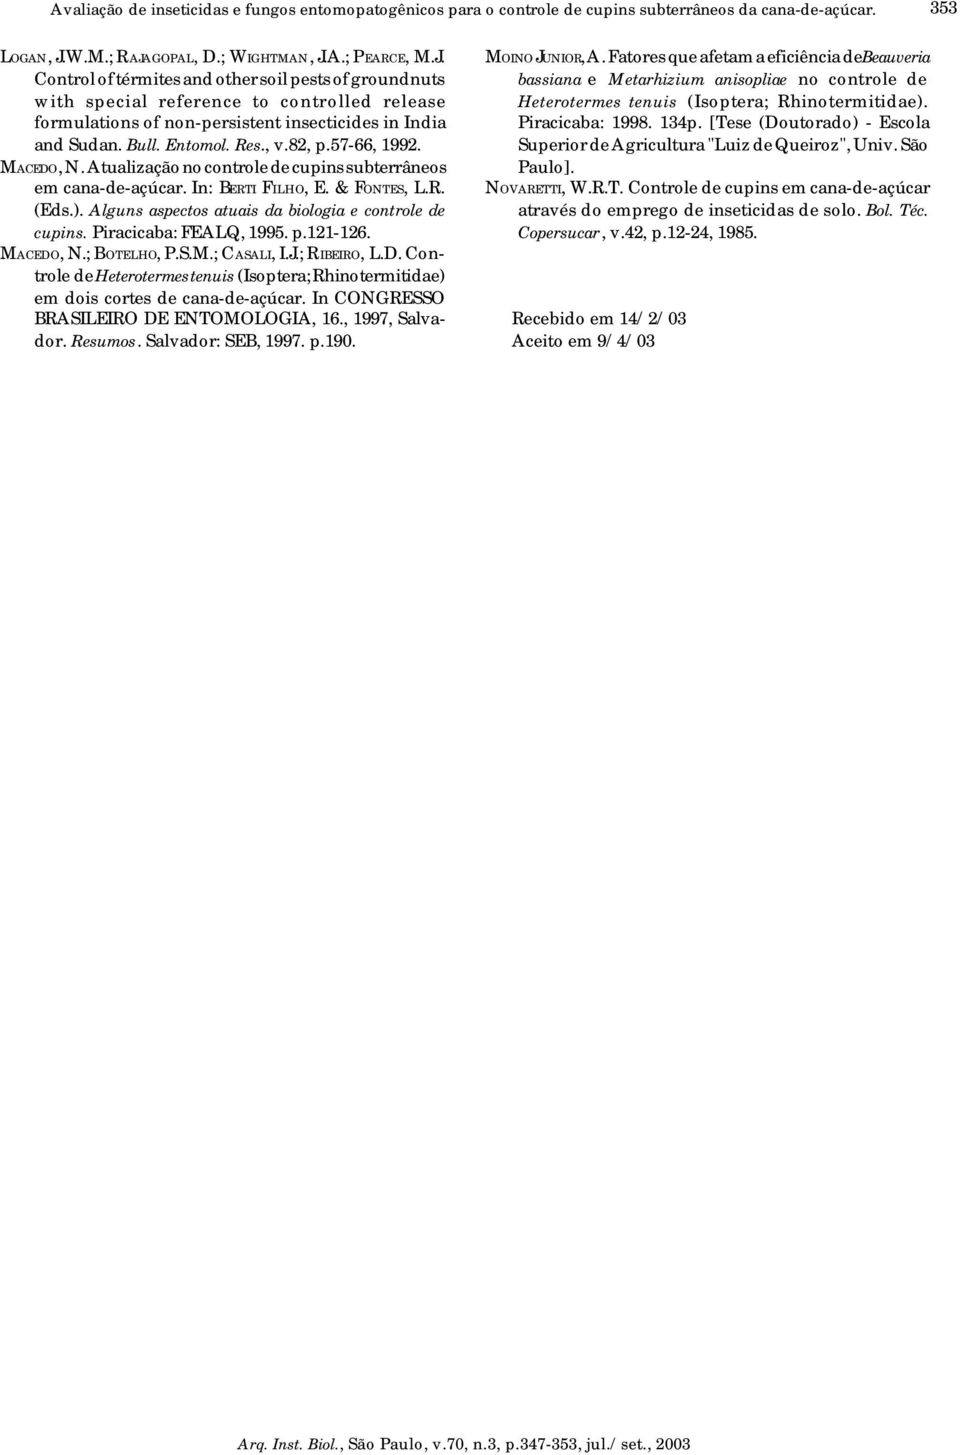 Alguns aspectos atuais da biologia e controle de cupins. Piracicaba: FEALQ, 995. p.2-26. MACEDO, N.; BOTELHO, P.S.M.; CASALI, I.J.; RIBEIRO, L.D. Controle de Heterotermes tenuis (Isoptera; Rhinotermitidae) em dois cortes de cana-de-açúcar.